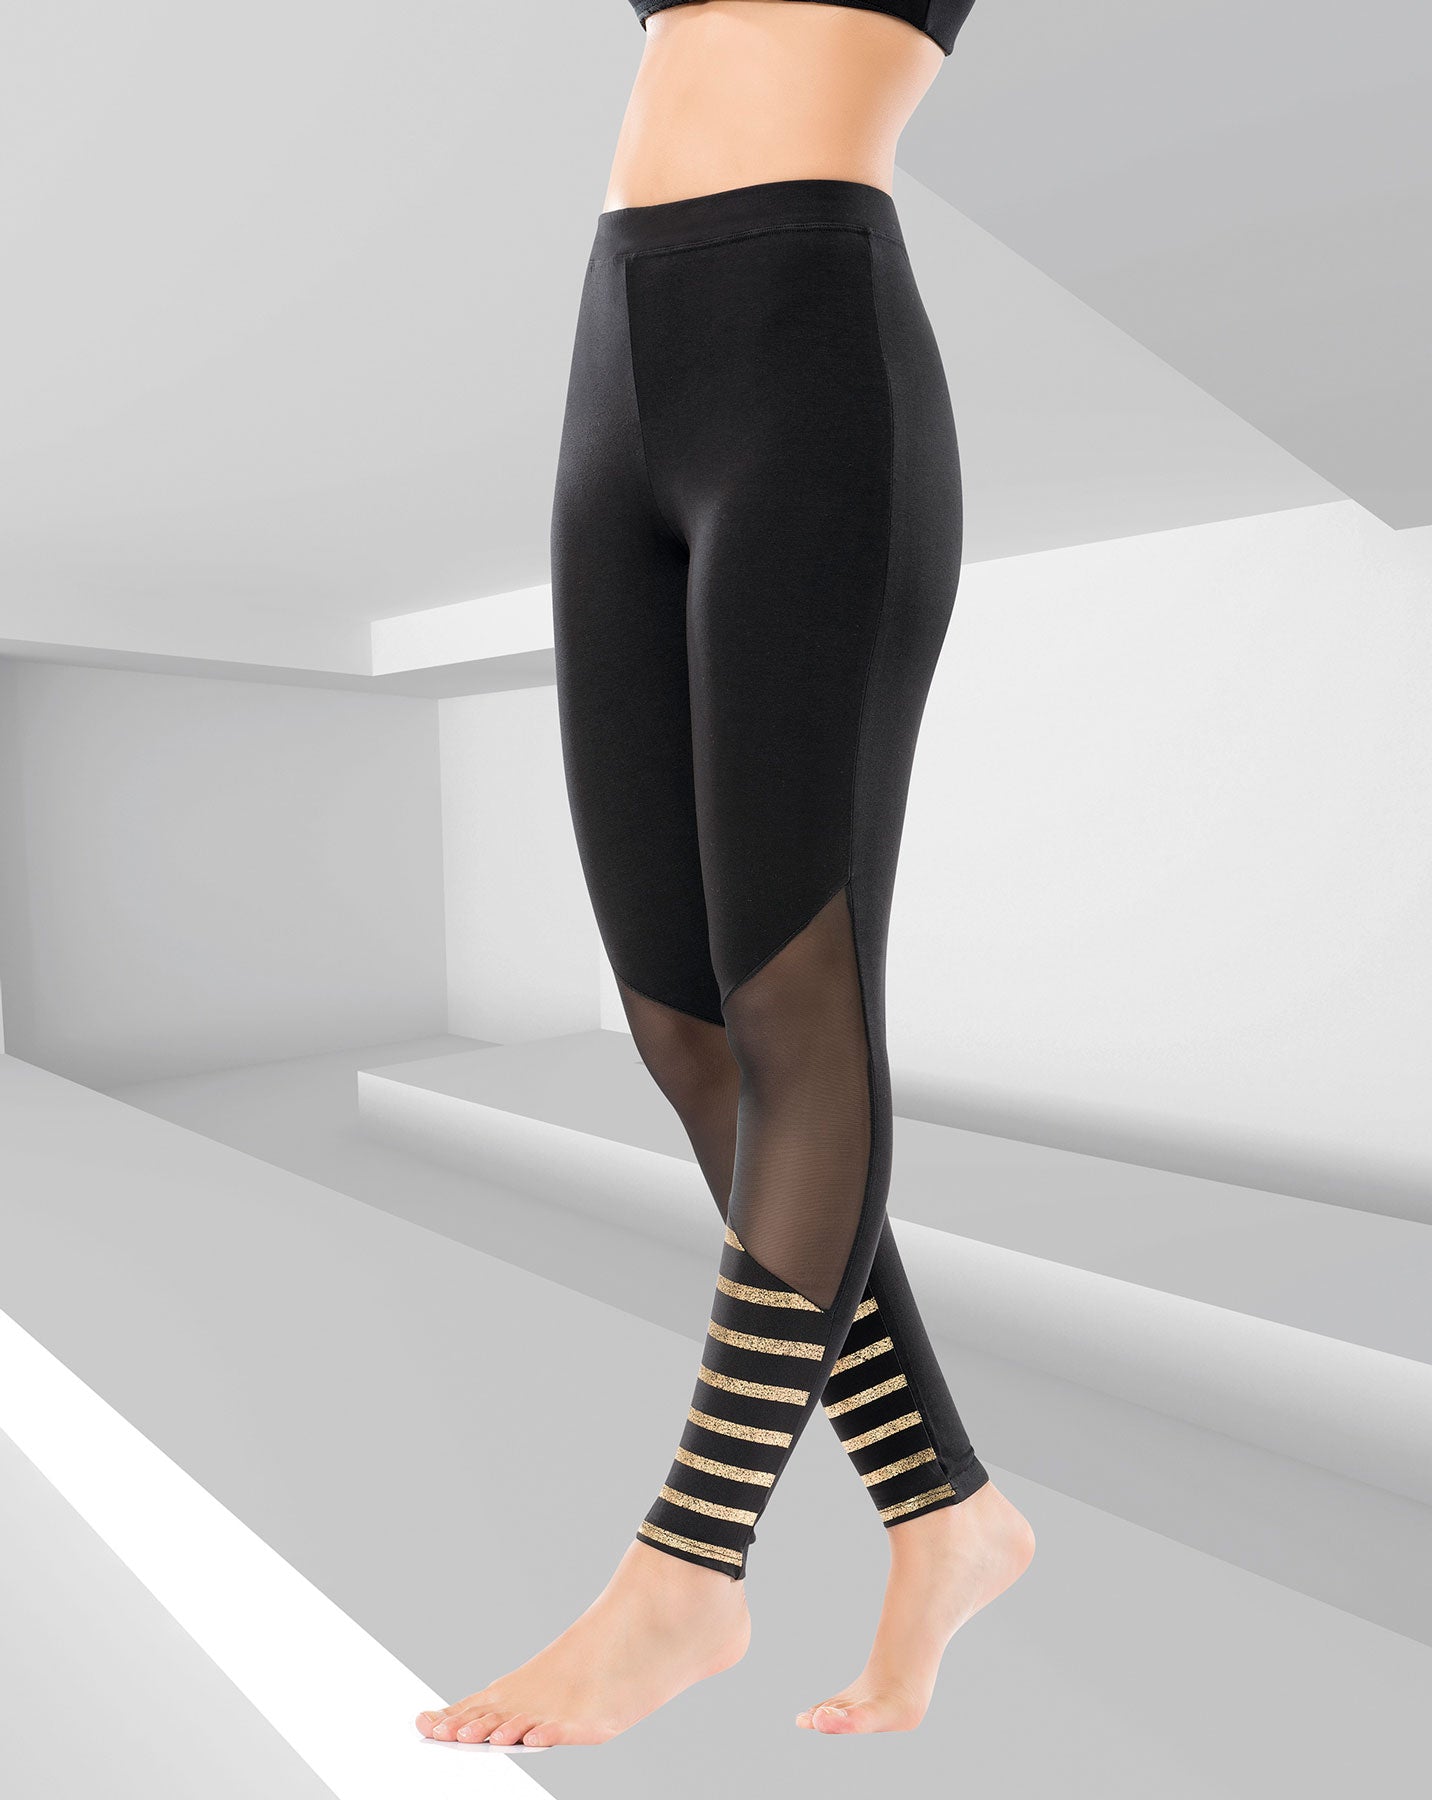 Modell Damen Leggings 0557